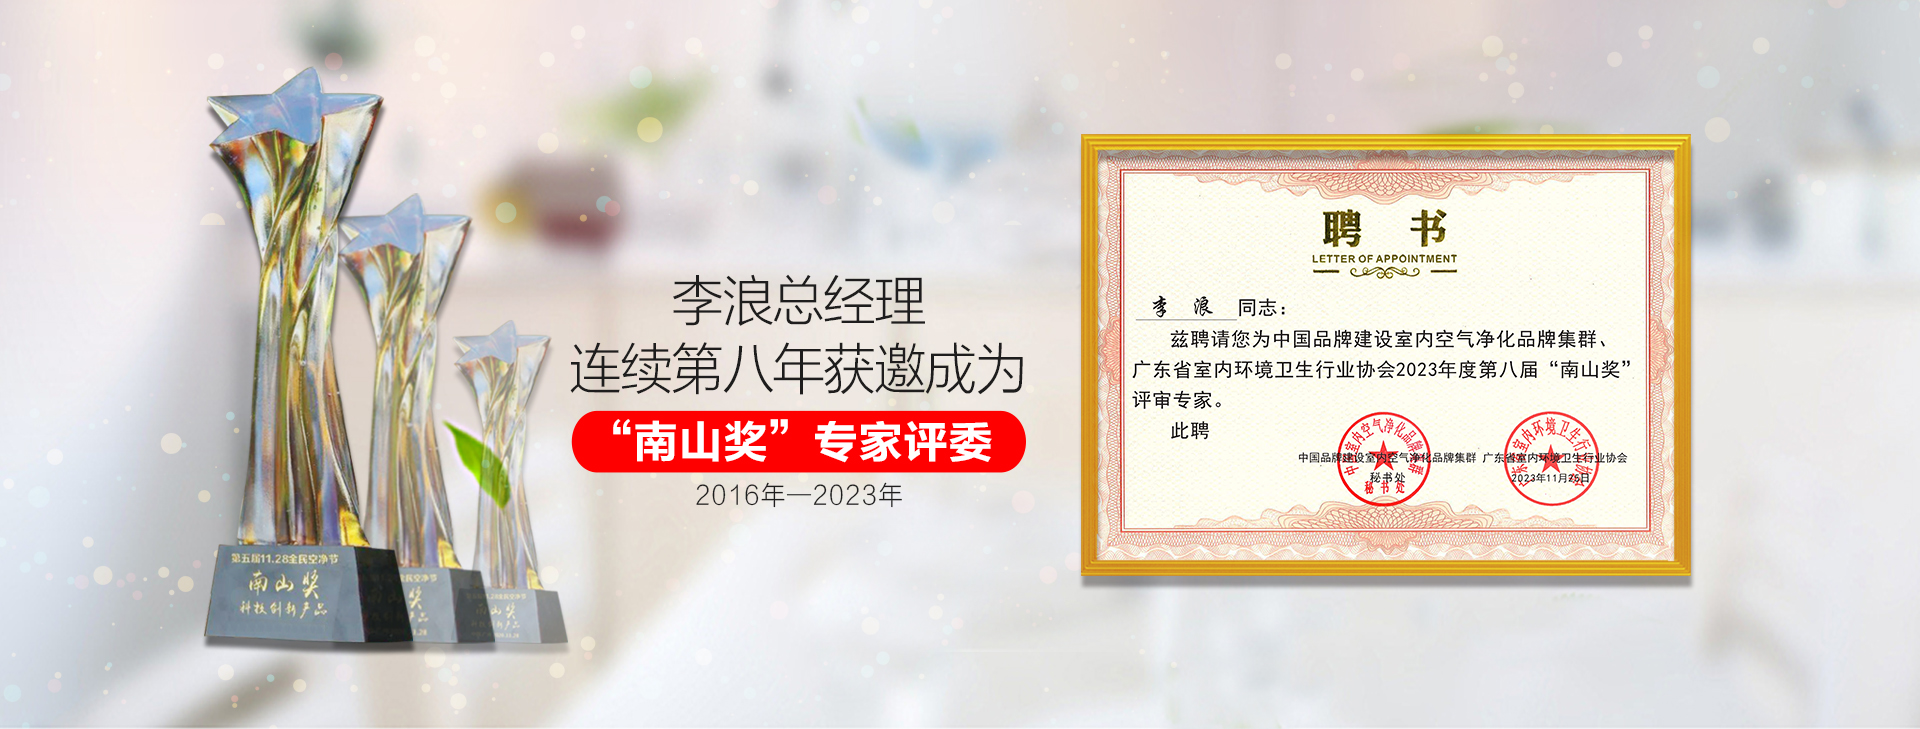 东展科技李浪总经理连续第二年获邀成为“南山奖”专家评委